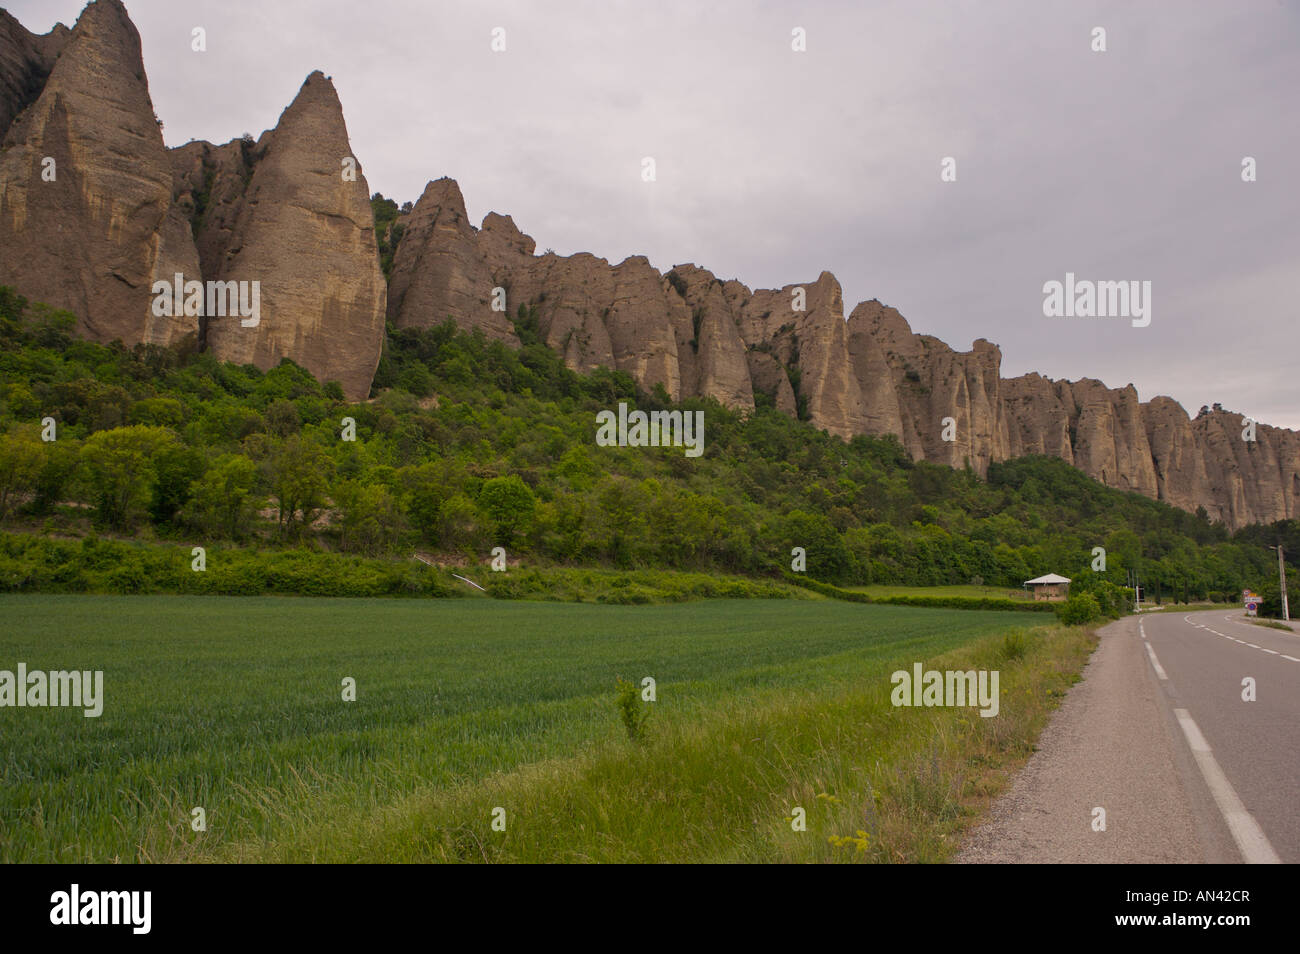 Les penitenti des Mees, righe di rocce colonnare oltre 100 metri e alto oltre 2 km lunga nei pressi del villaggio di Les Mees Foto Stock